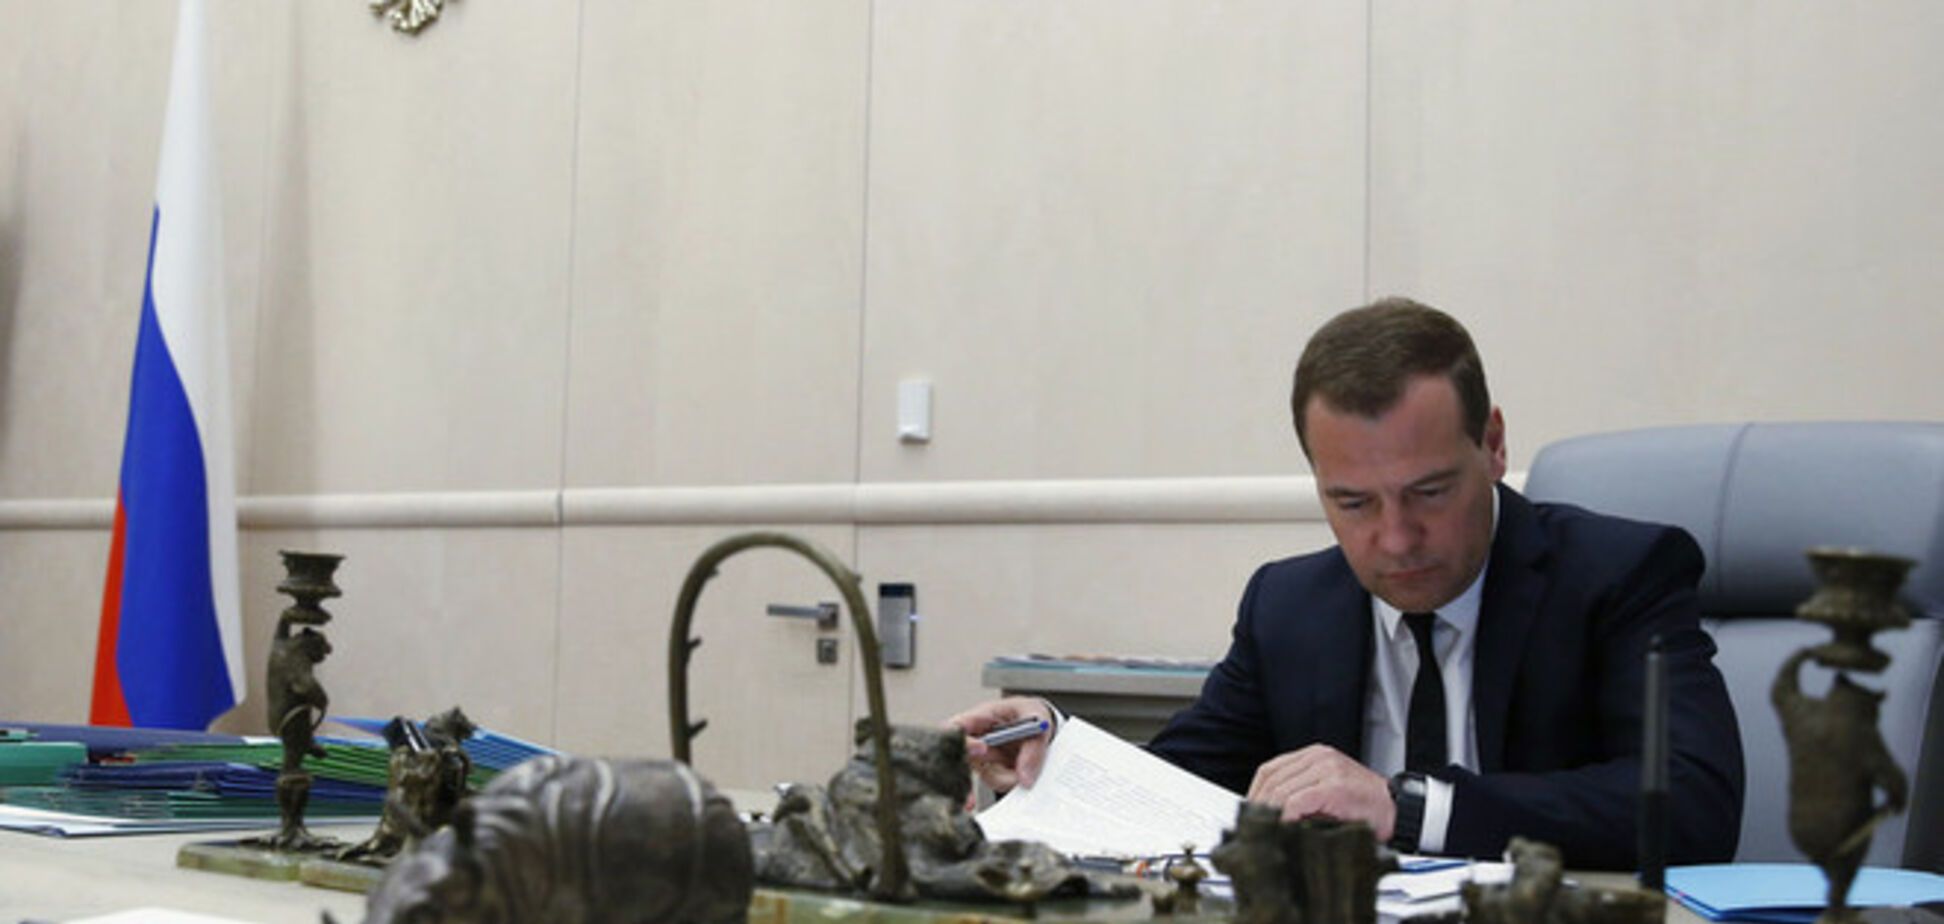 Медведев пророчит Украине проблемы в экономике после выхода из СНГ